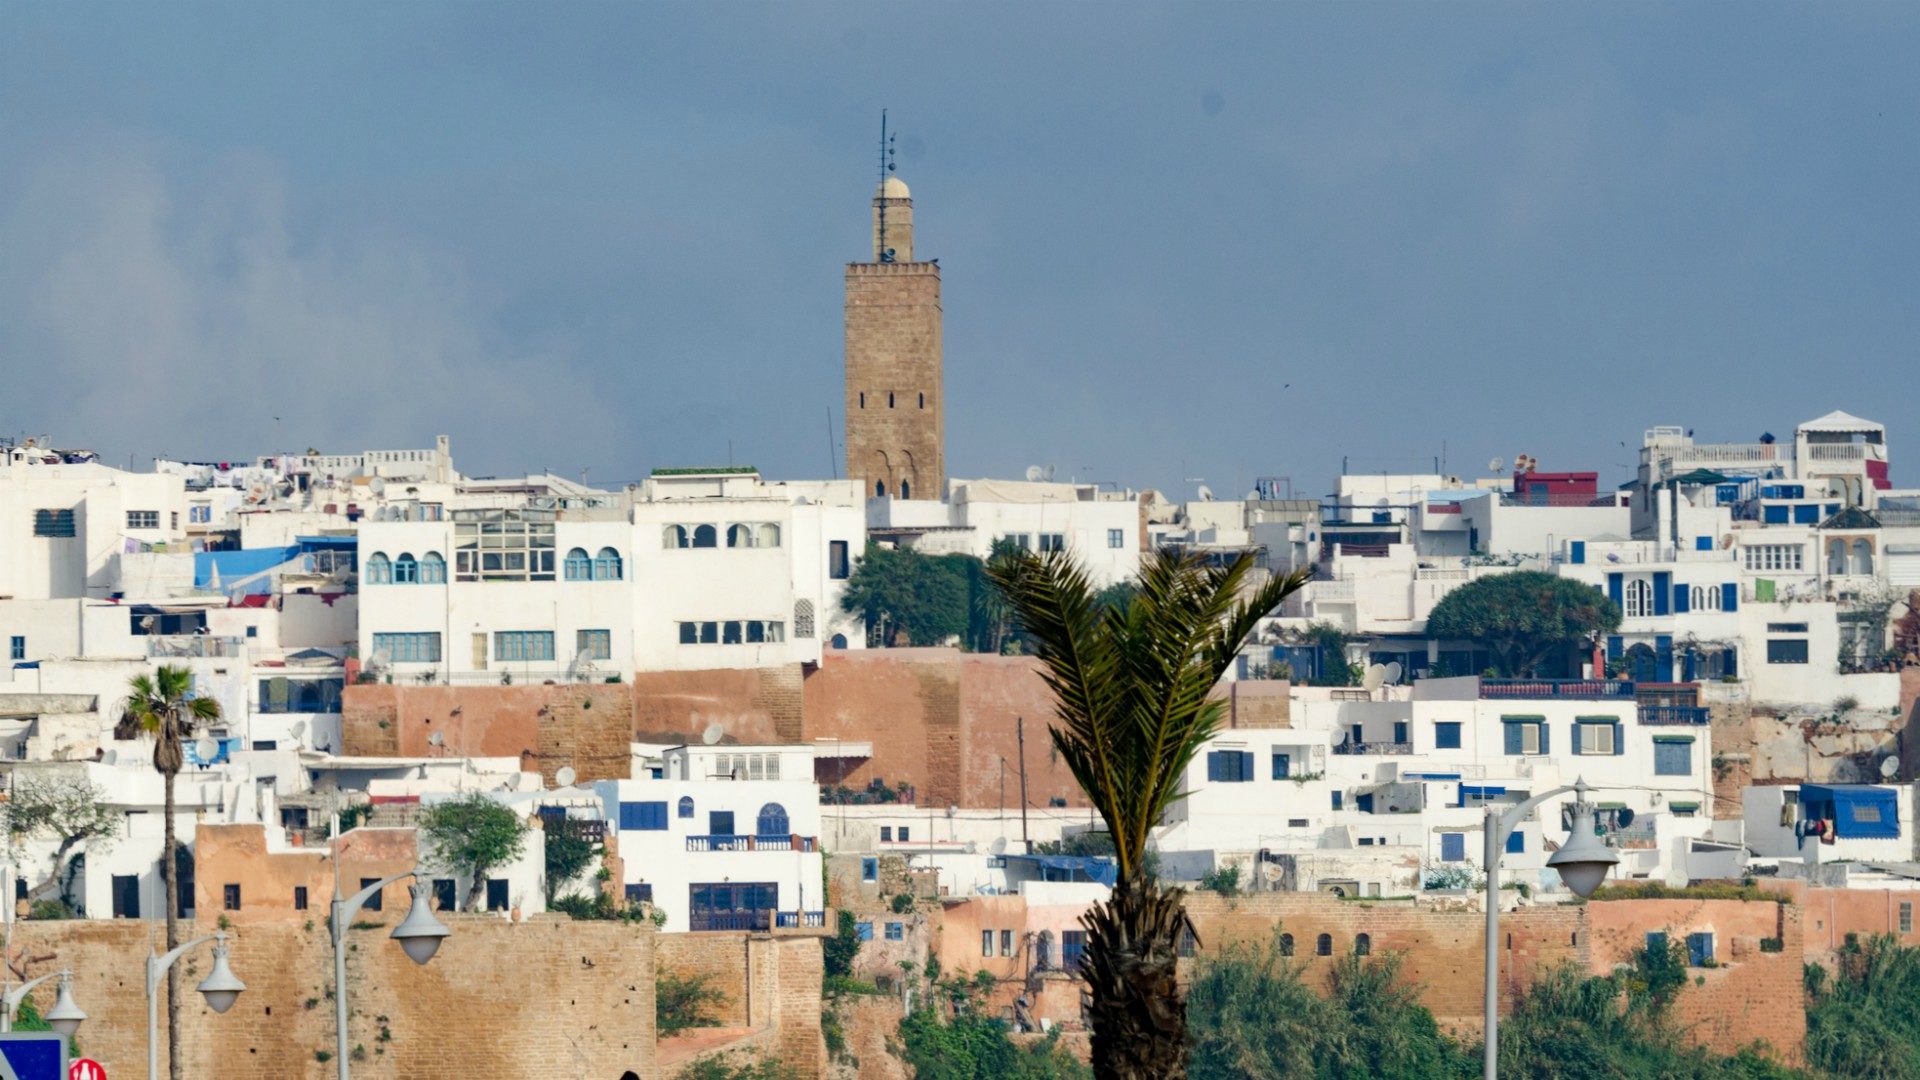 Le dialogue interreligieux sera au coeur de la visite du pape au Maroc | © xiquinhosilva/Flickr/CC BY 2.0